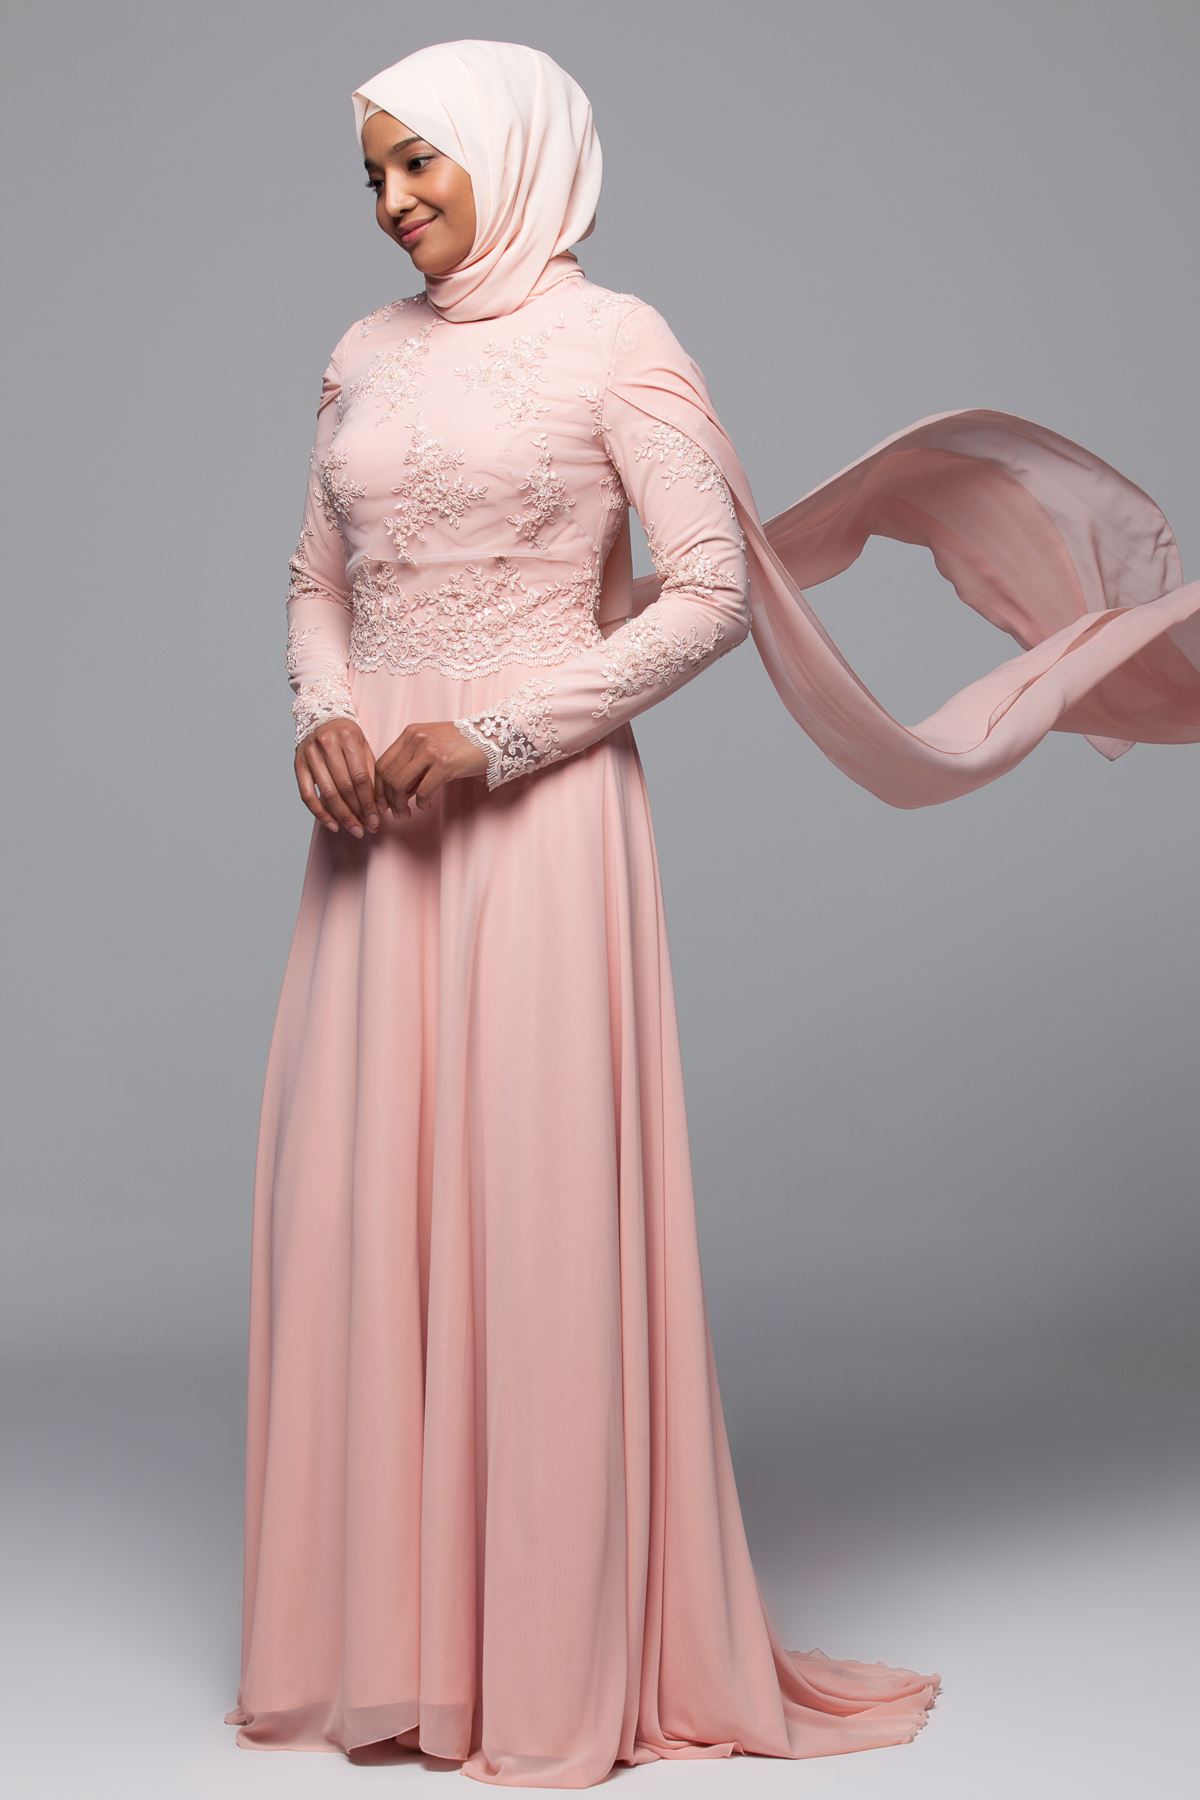 En Ucuz Armine Tesettur Abiye Elbise Modelleri 3